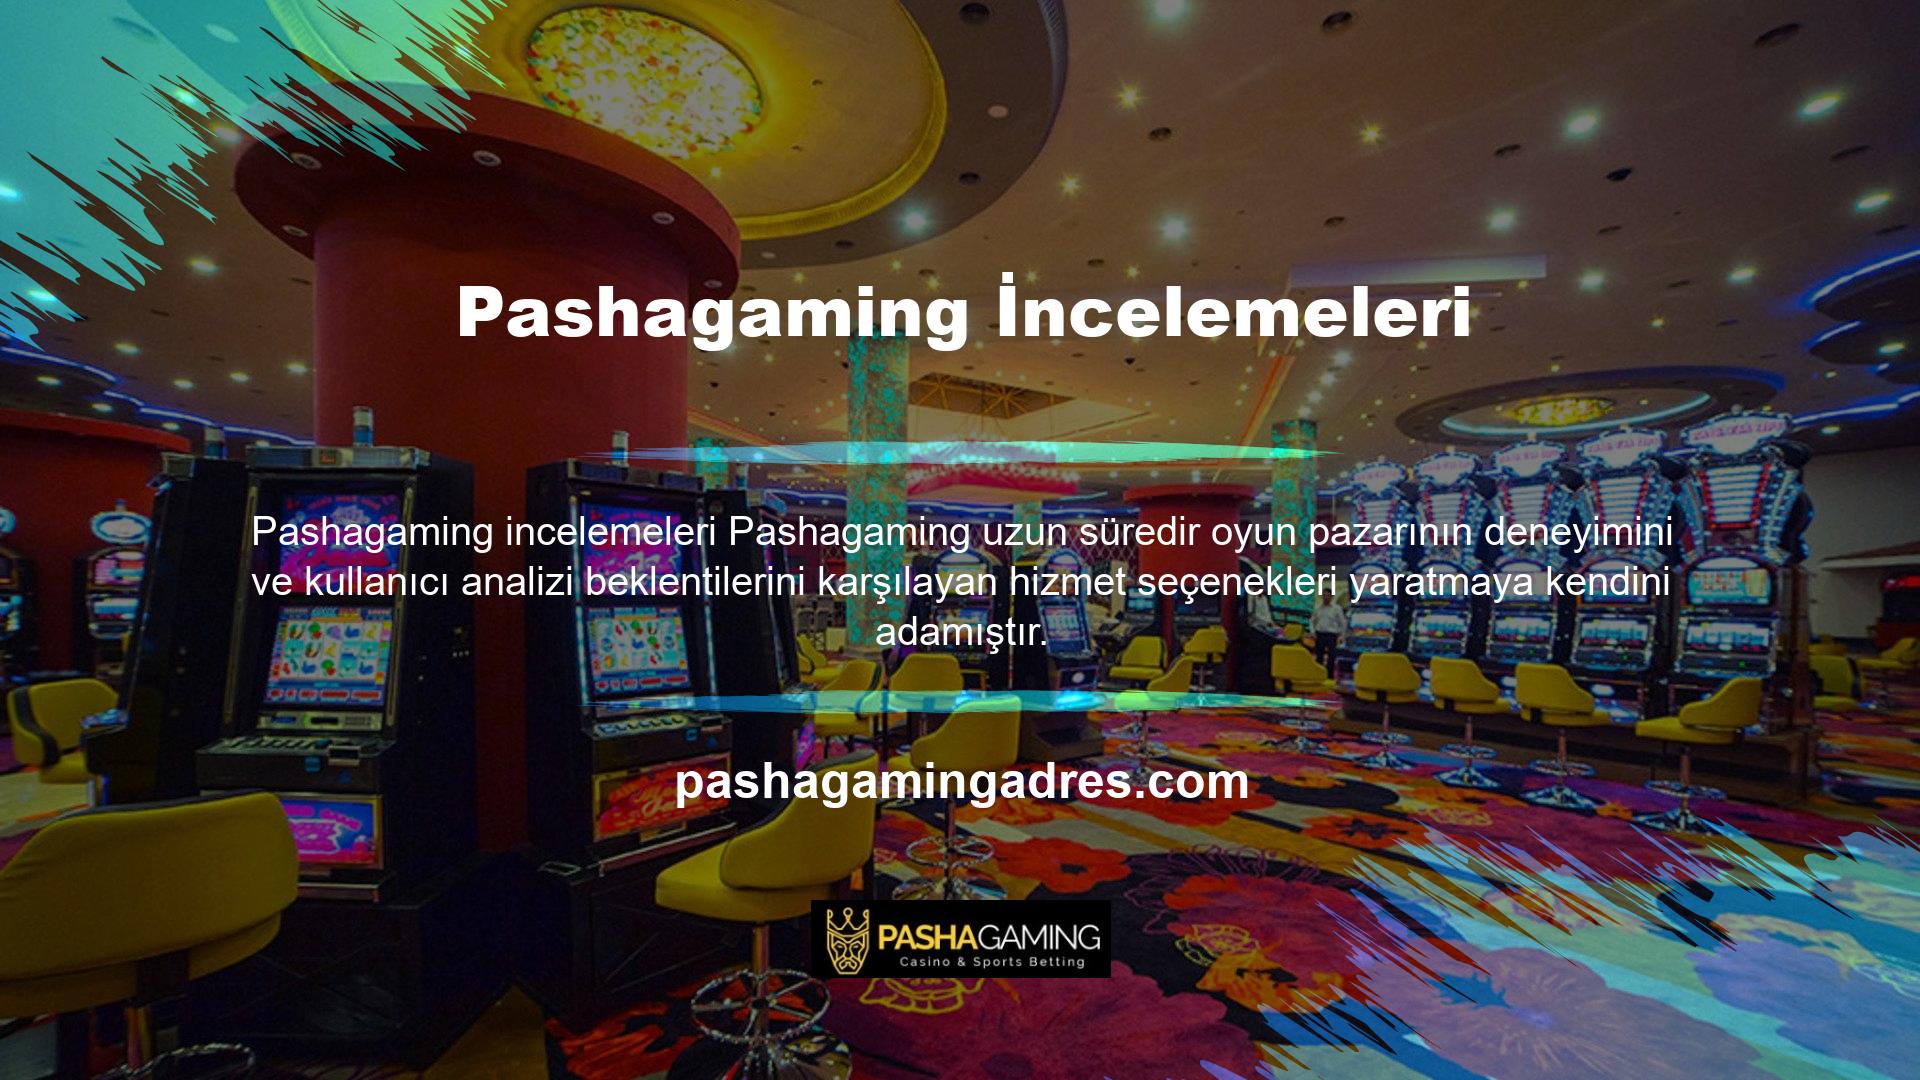 Türkiye pazarındaki tüm online oyun severler Pashagaming incelemelerini incelediler ve birçok olumlu yorum gördükten sonra üyeliğe başlamaya karar verdiler